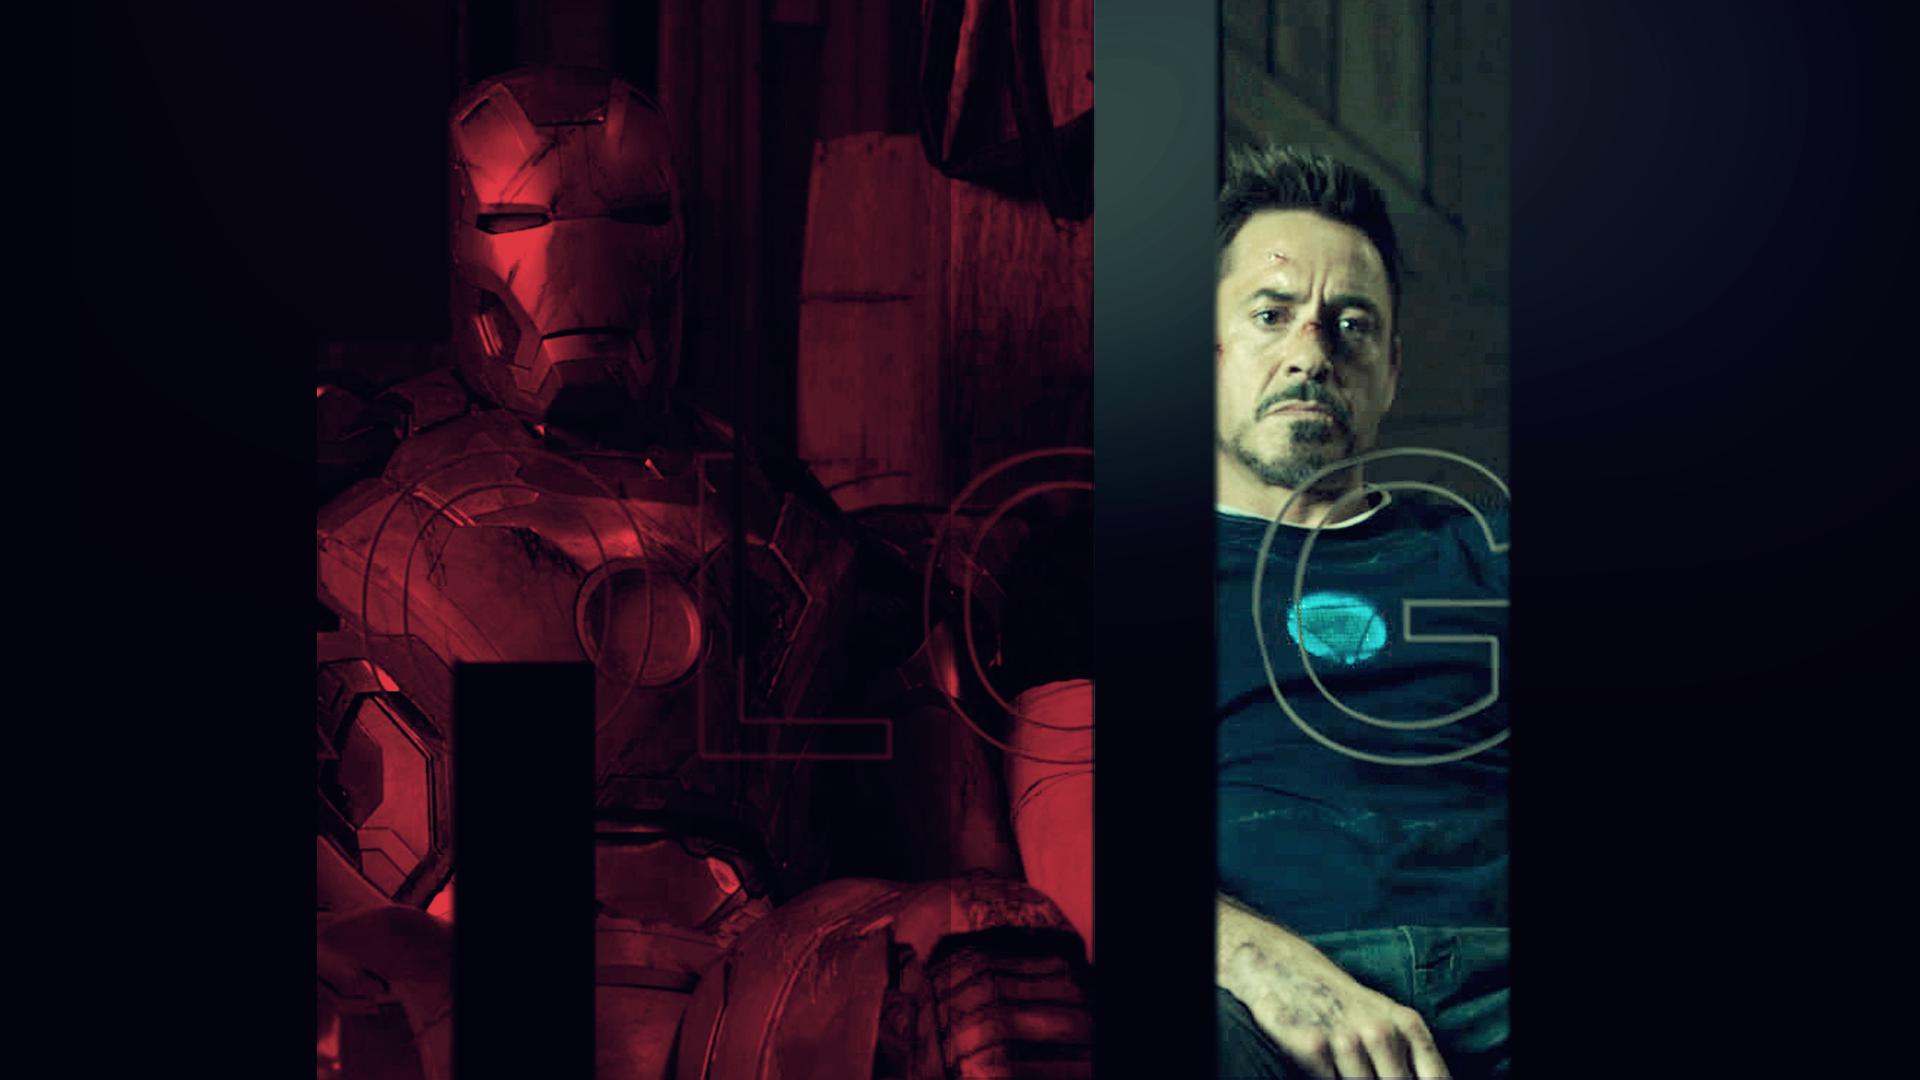 Descarga gratuita de fondo de pantalla para móvil de Iron Man 3, Películas, Iron Man.